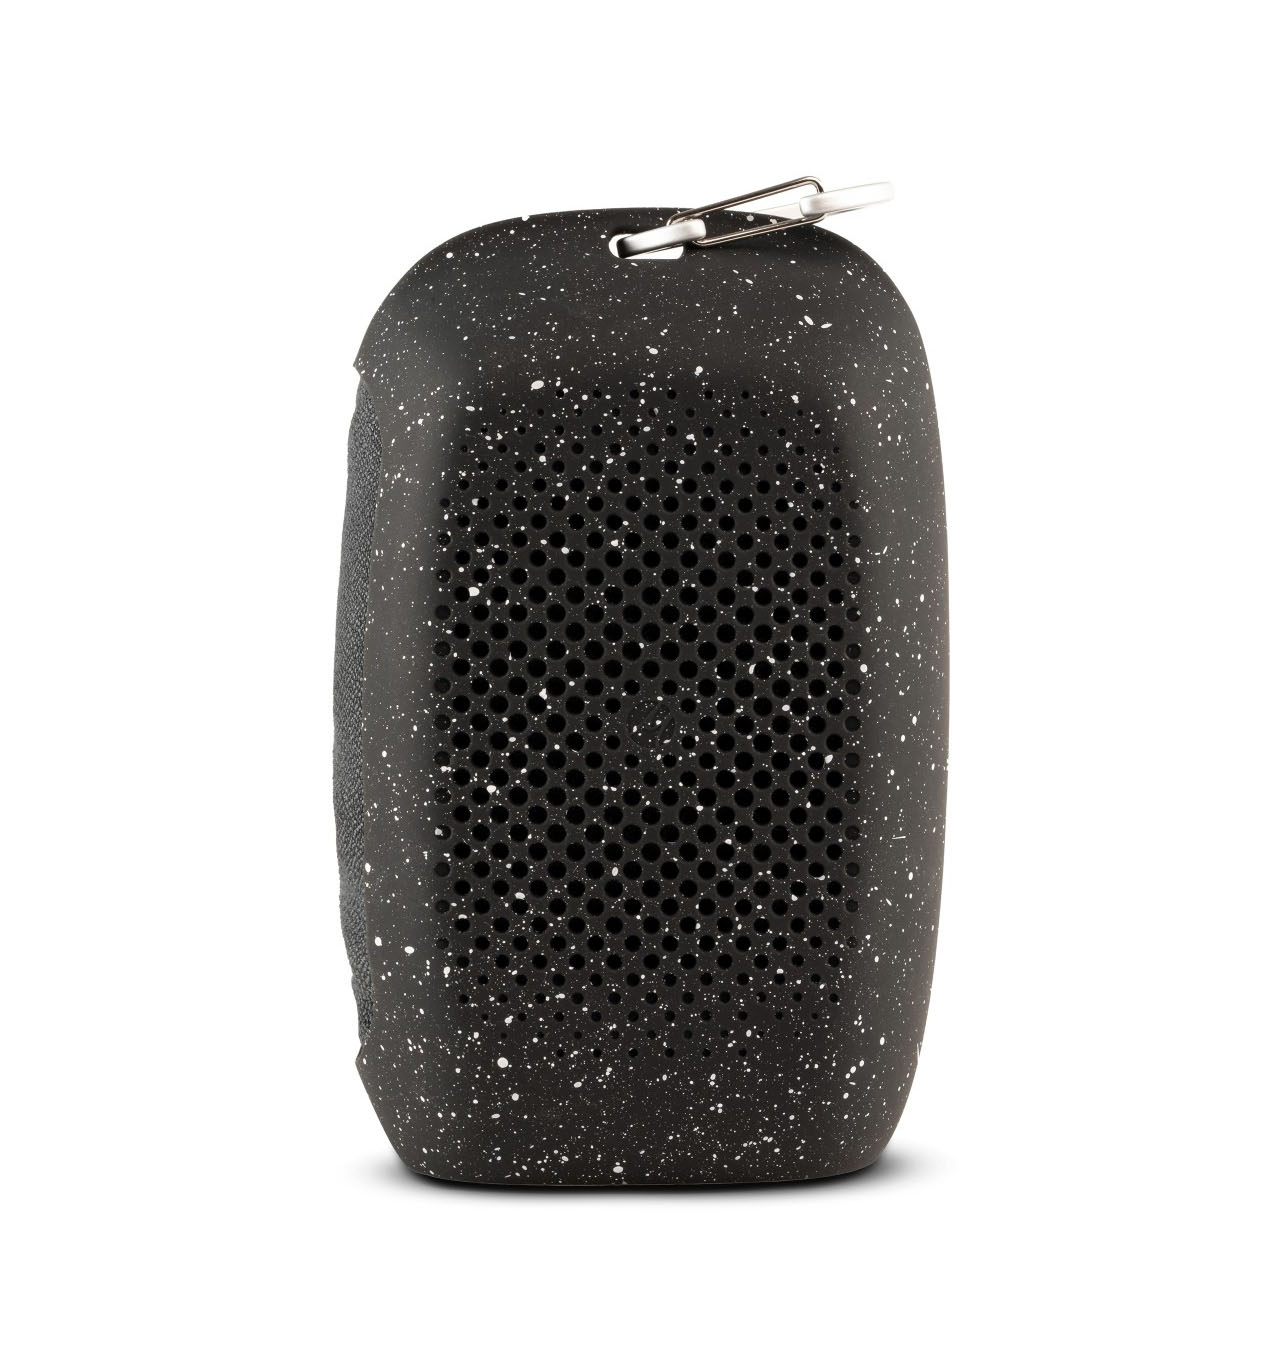 Matador - NanoDry Packable Shower Towel Large - Black Granite